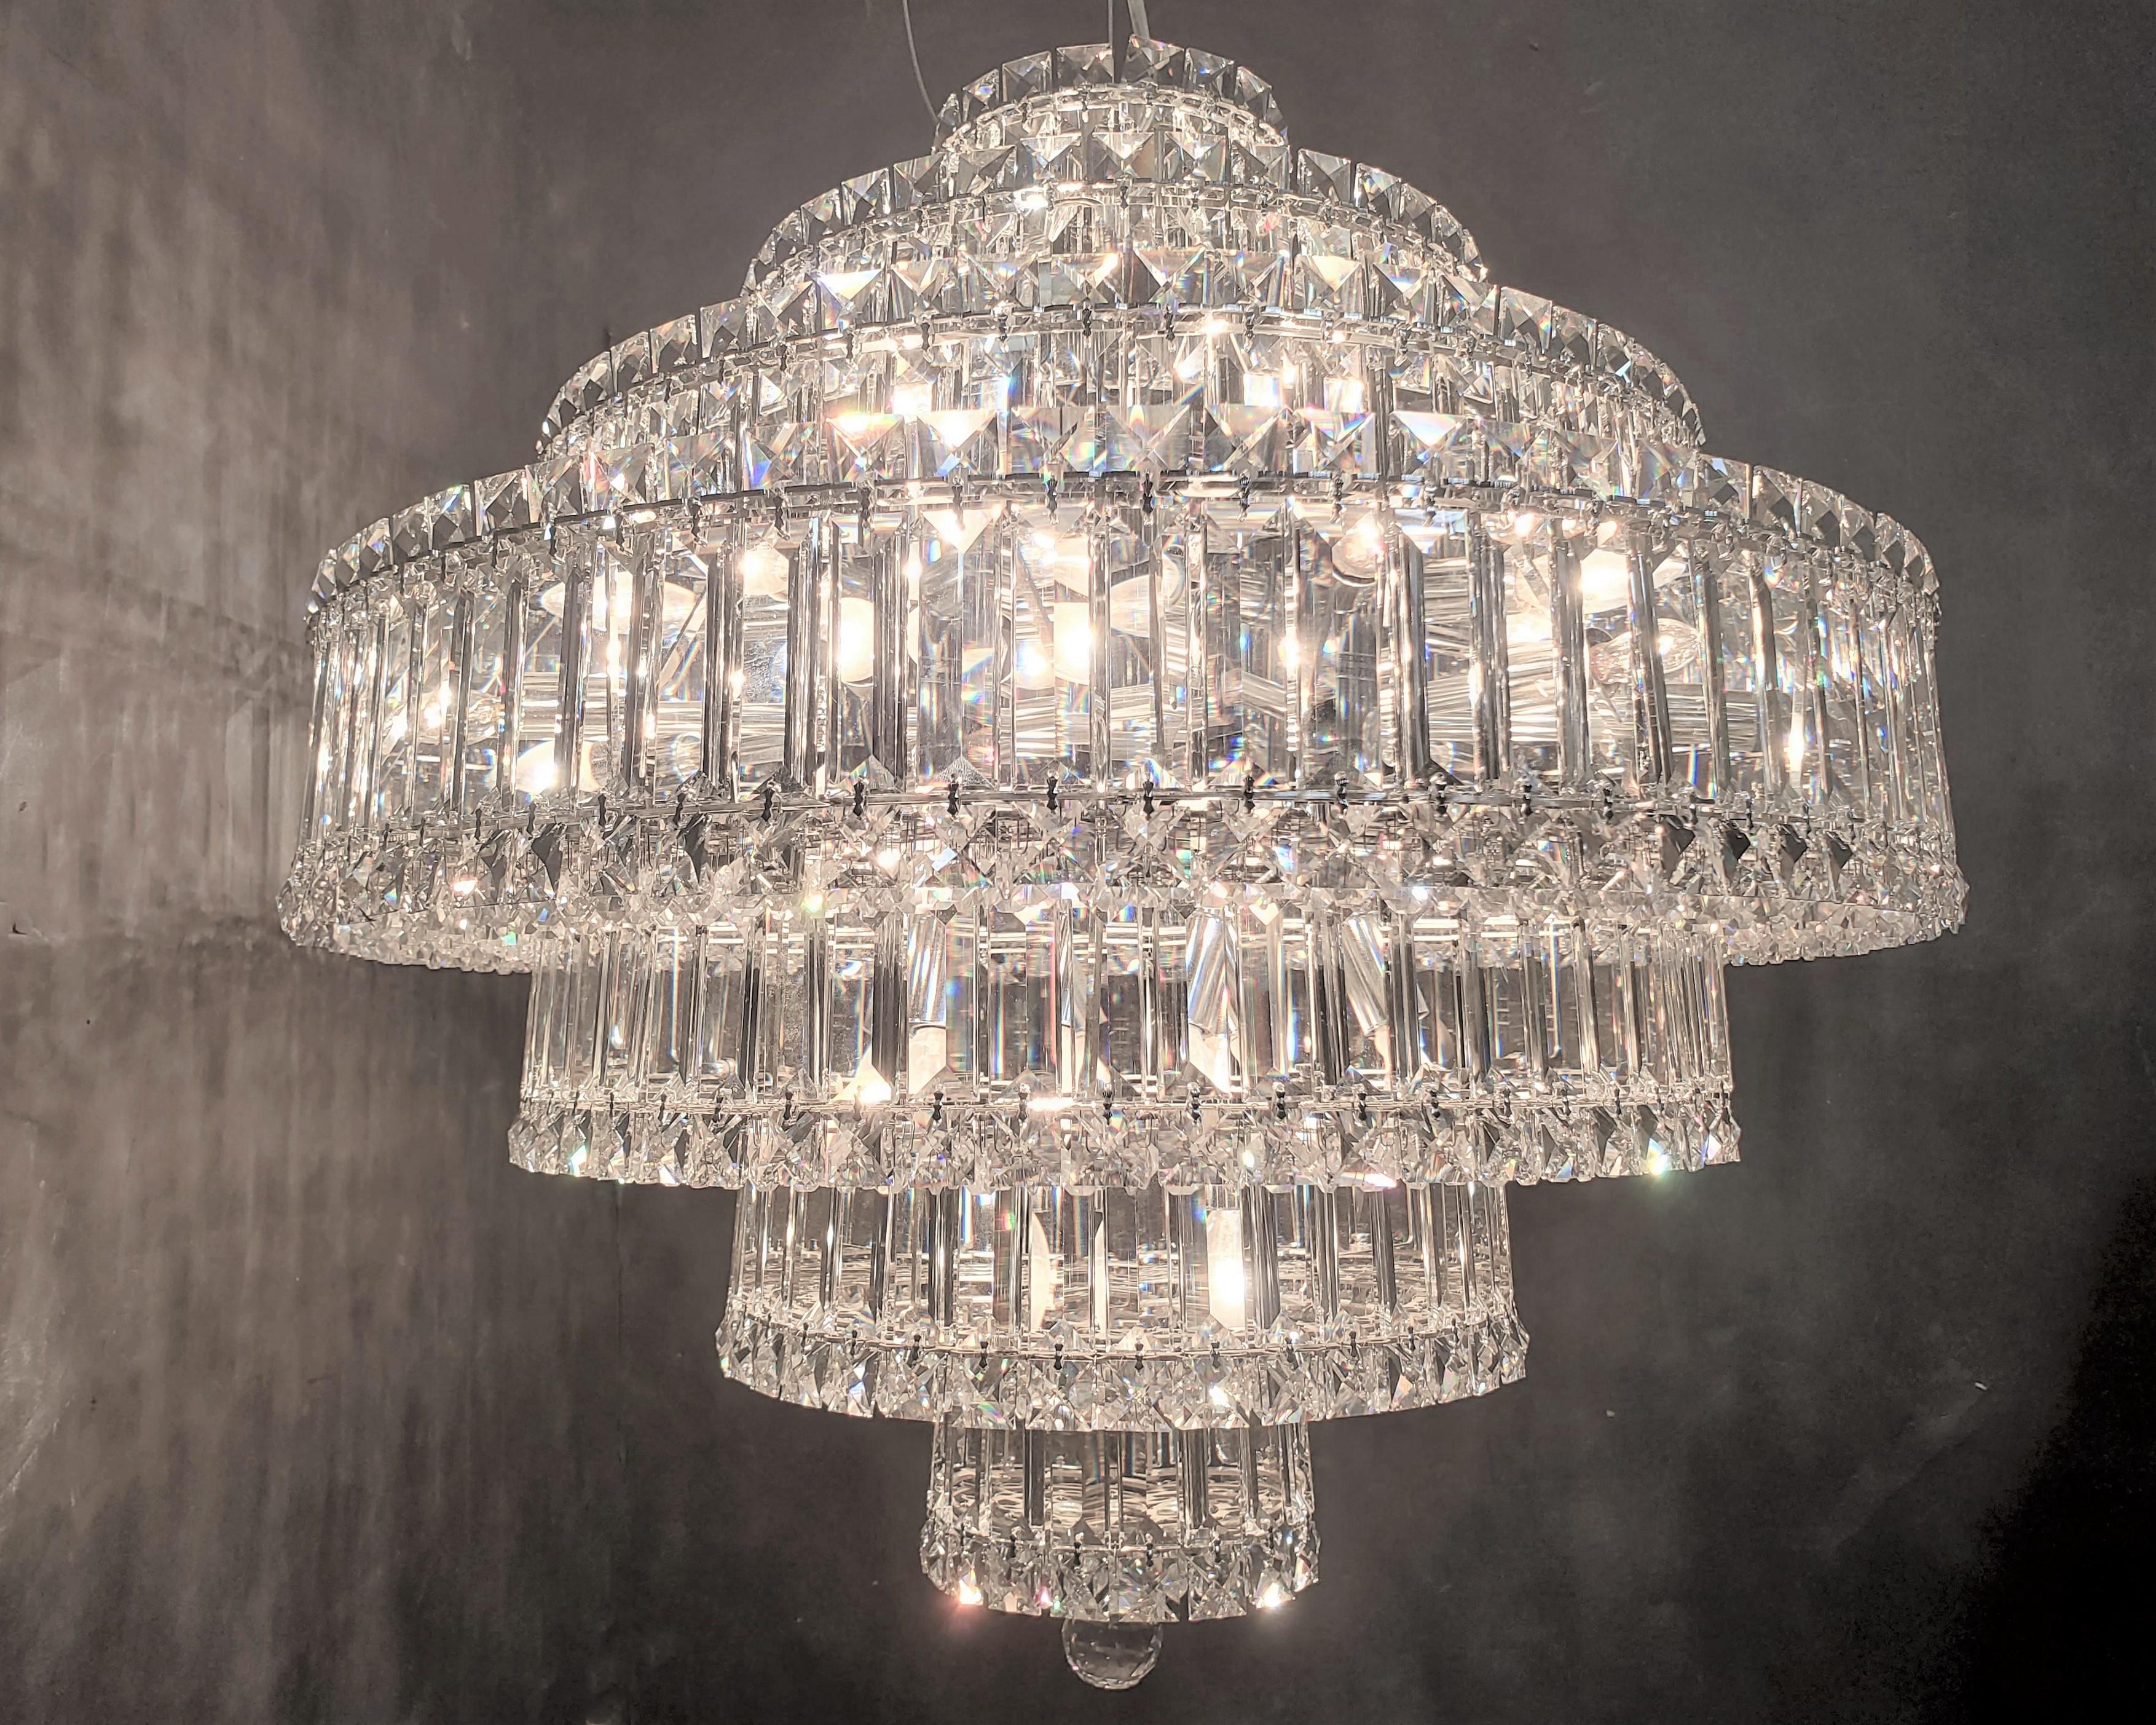 Large Round Schonbek Plaza Swarovski Sparkling Crystal Pendant Chandelier For Sale 2